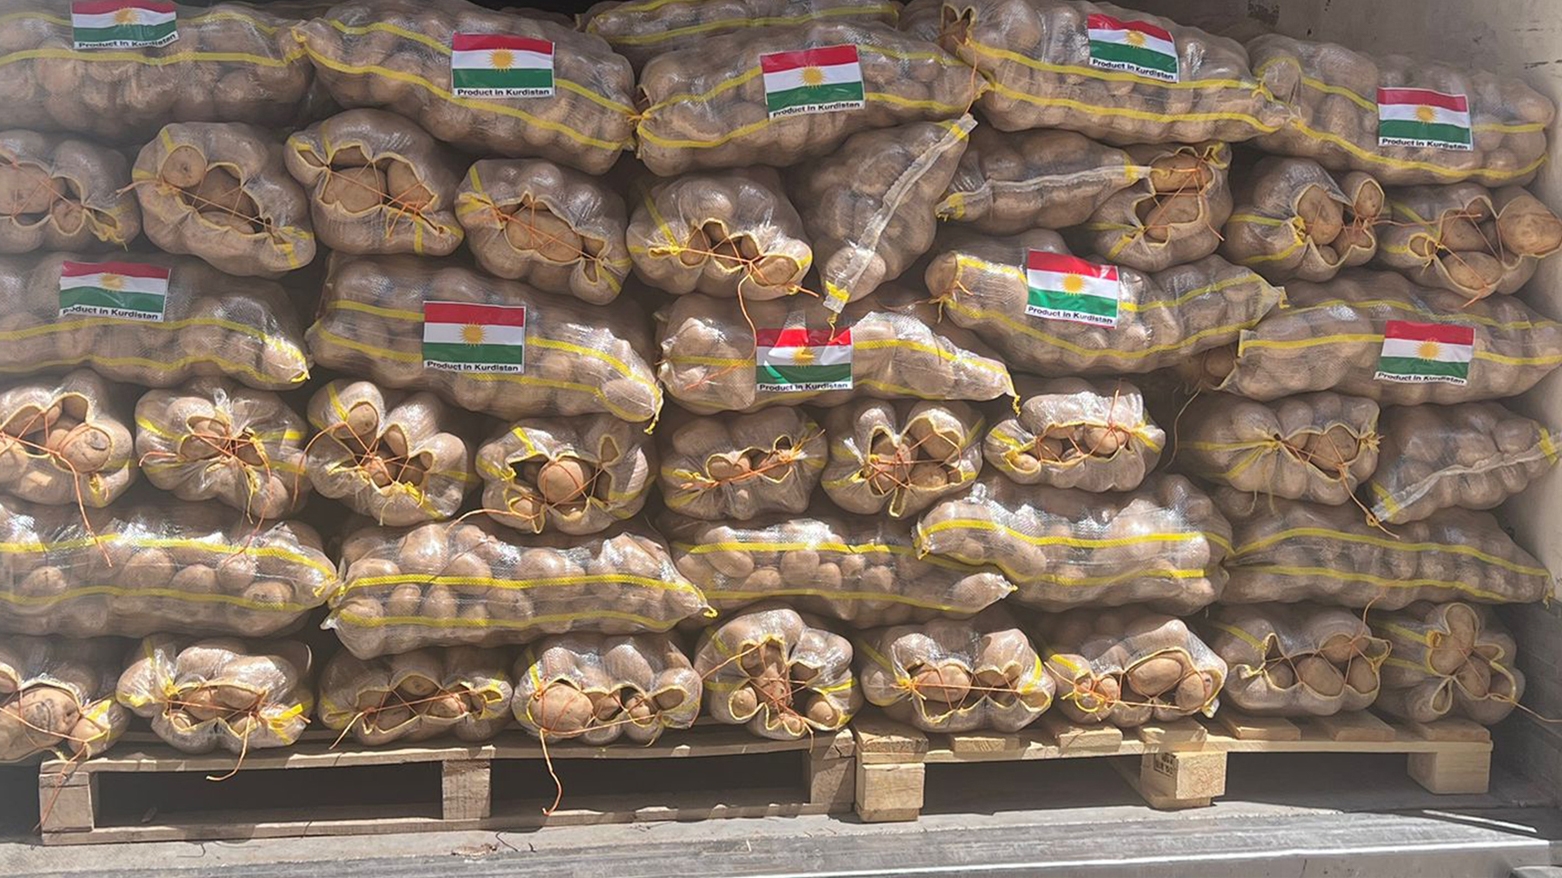 إقليم كوردستان يصدّر 1000 طن من البطاطا إلى الإمارات